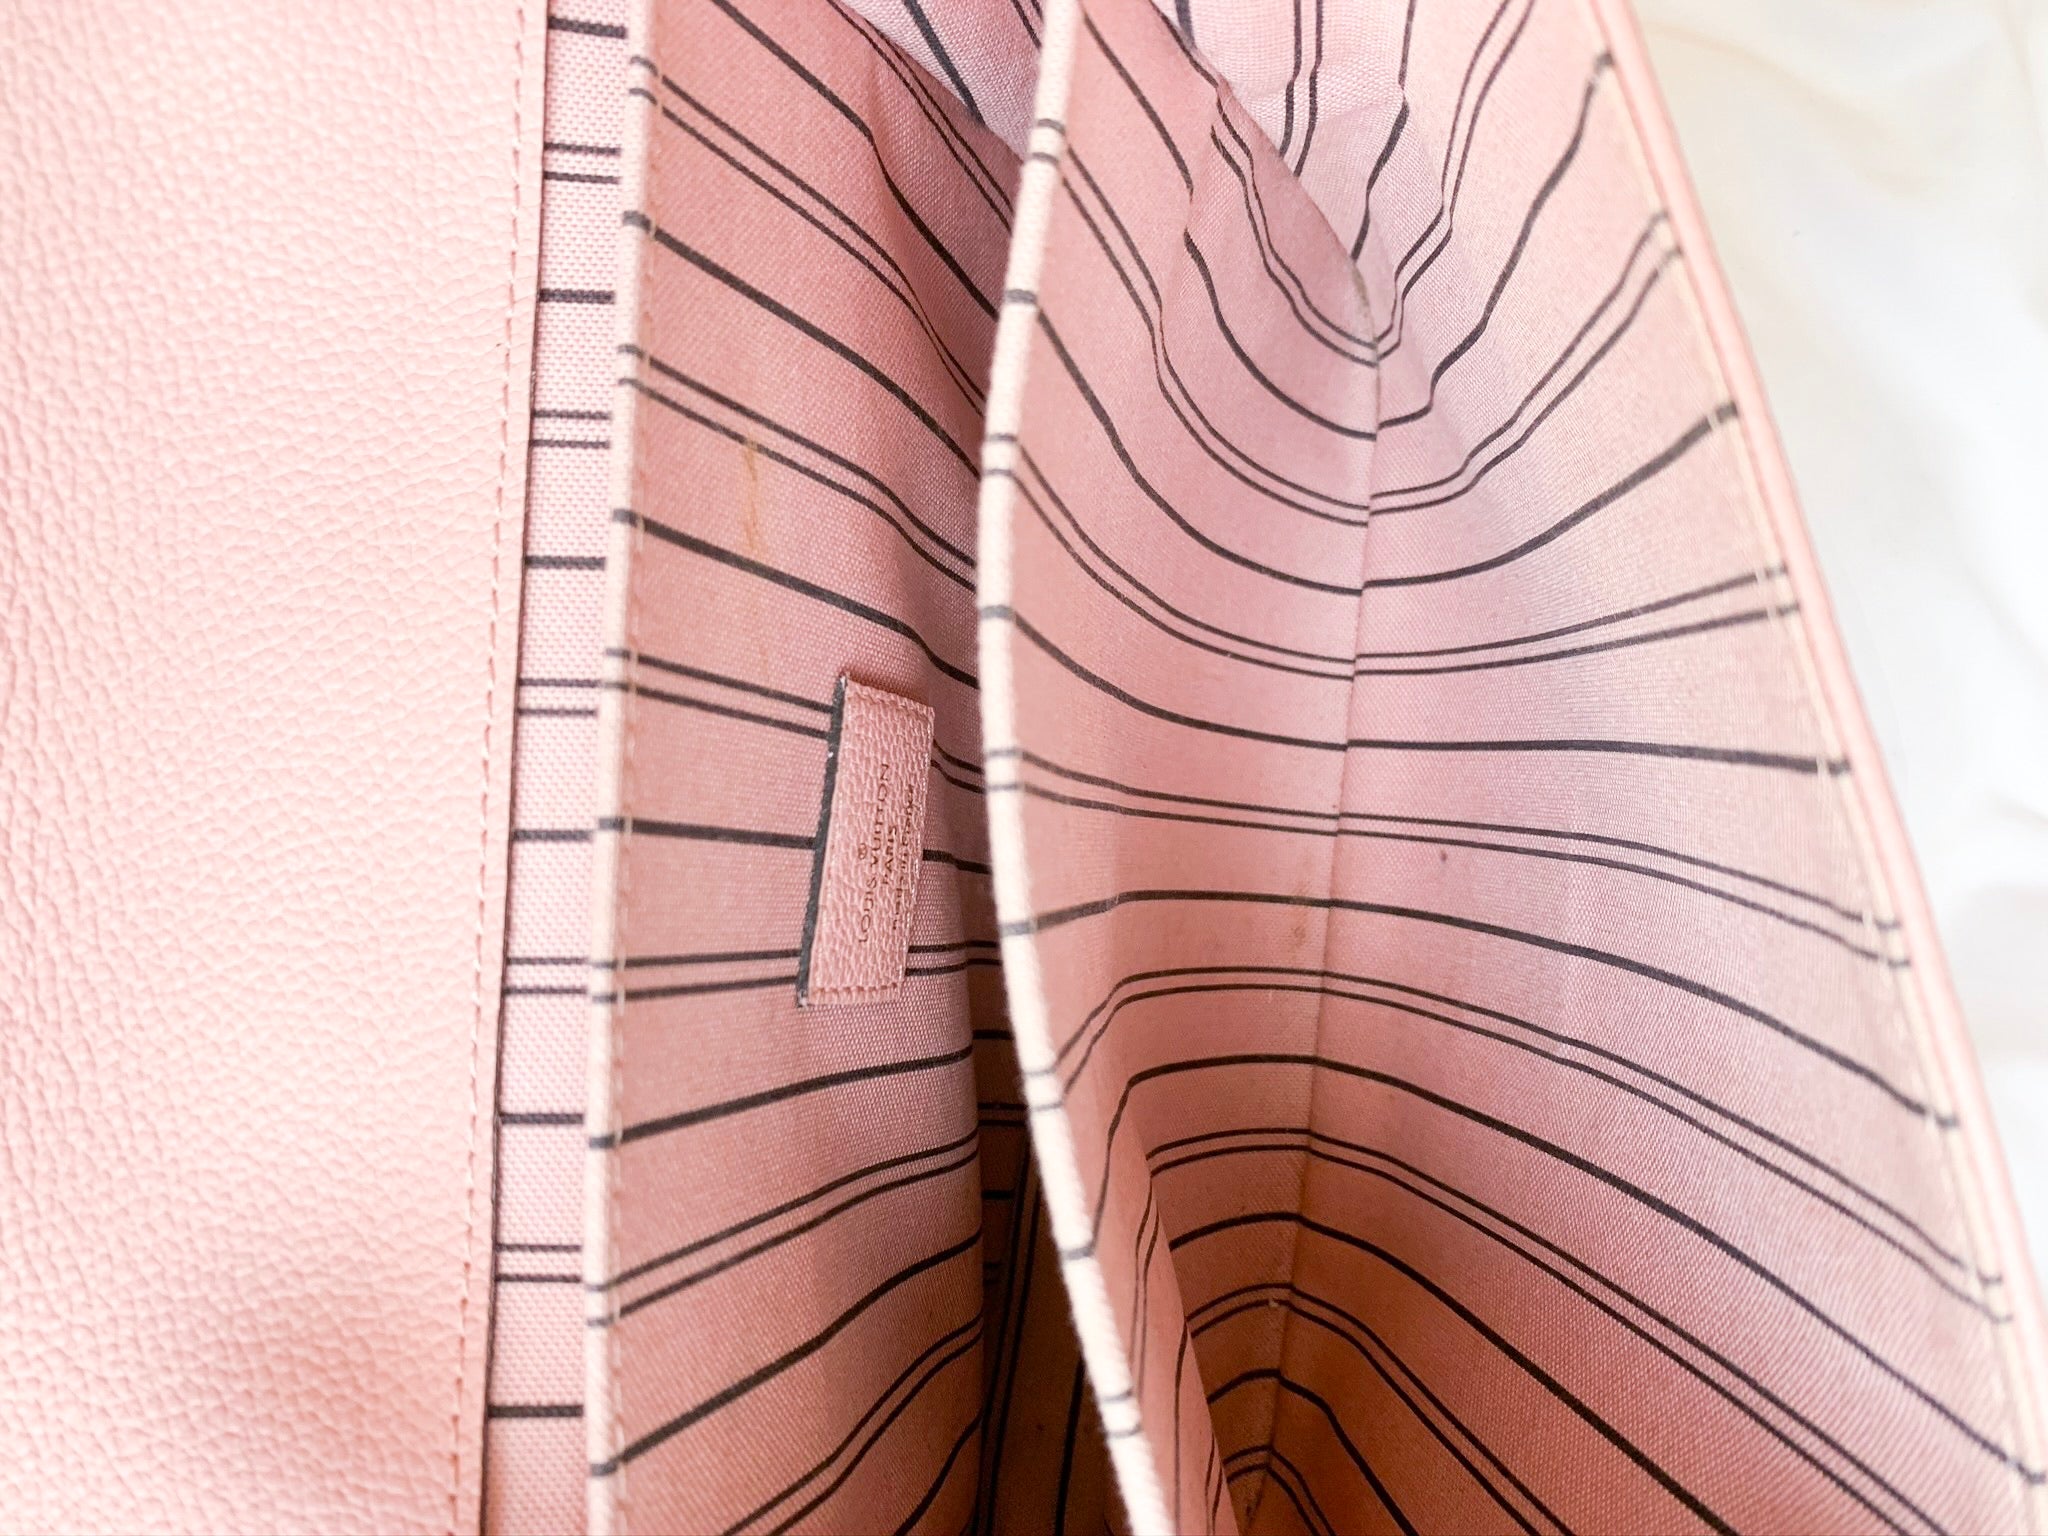 Louis Vuitton Pochette Métis in Rose Poudre Monogram Empreinte - SOLD